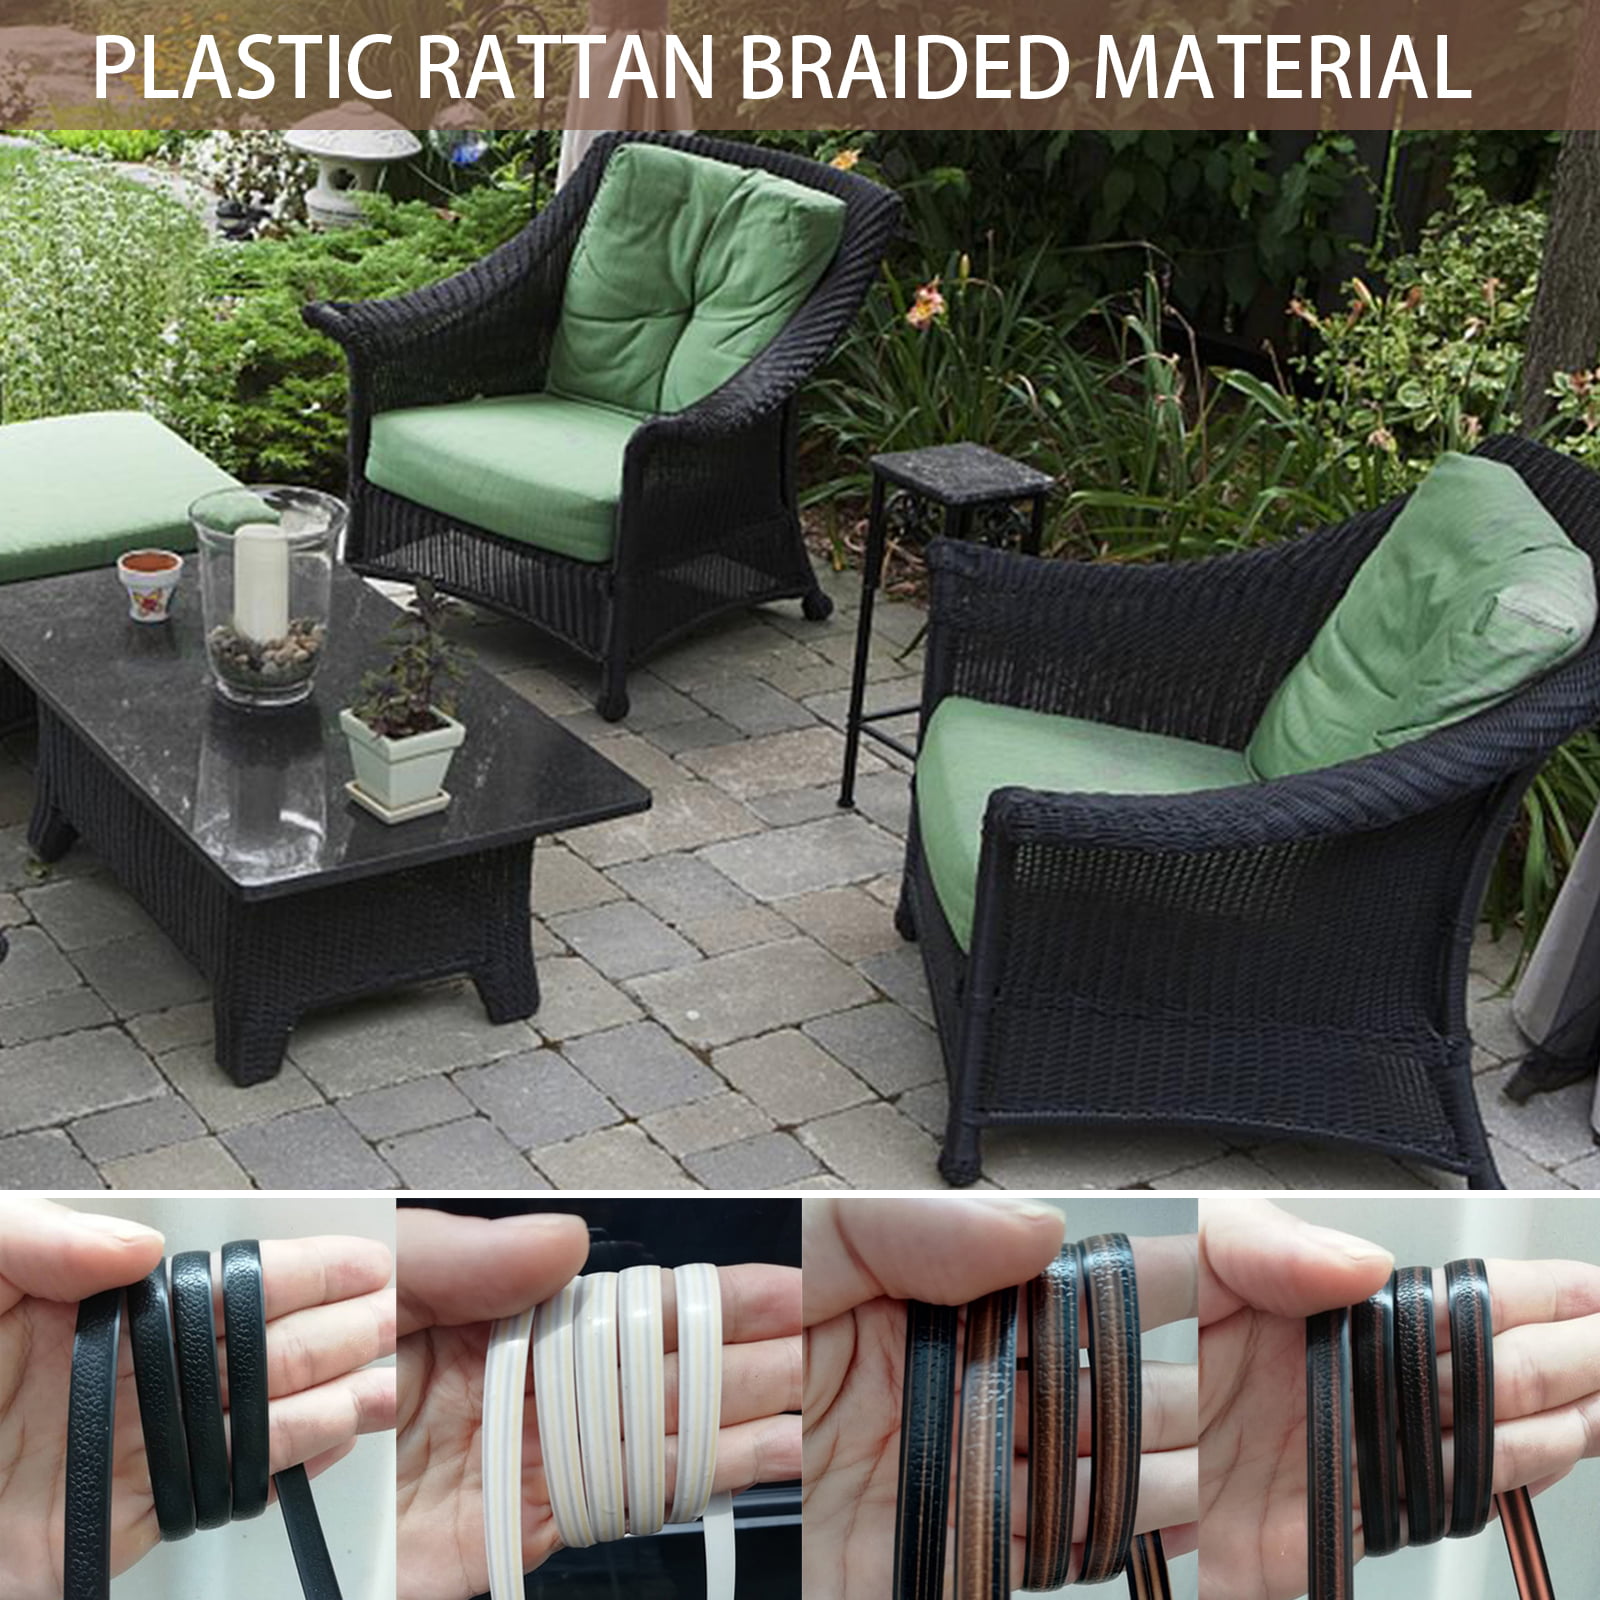 Feyart PE Rattan Strip for Outdoor Rattan Furniture Repair 8mm Plastic Wicker for Patio Furniture Restore Brown 500g/65m Long 